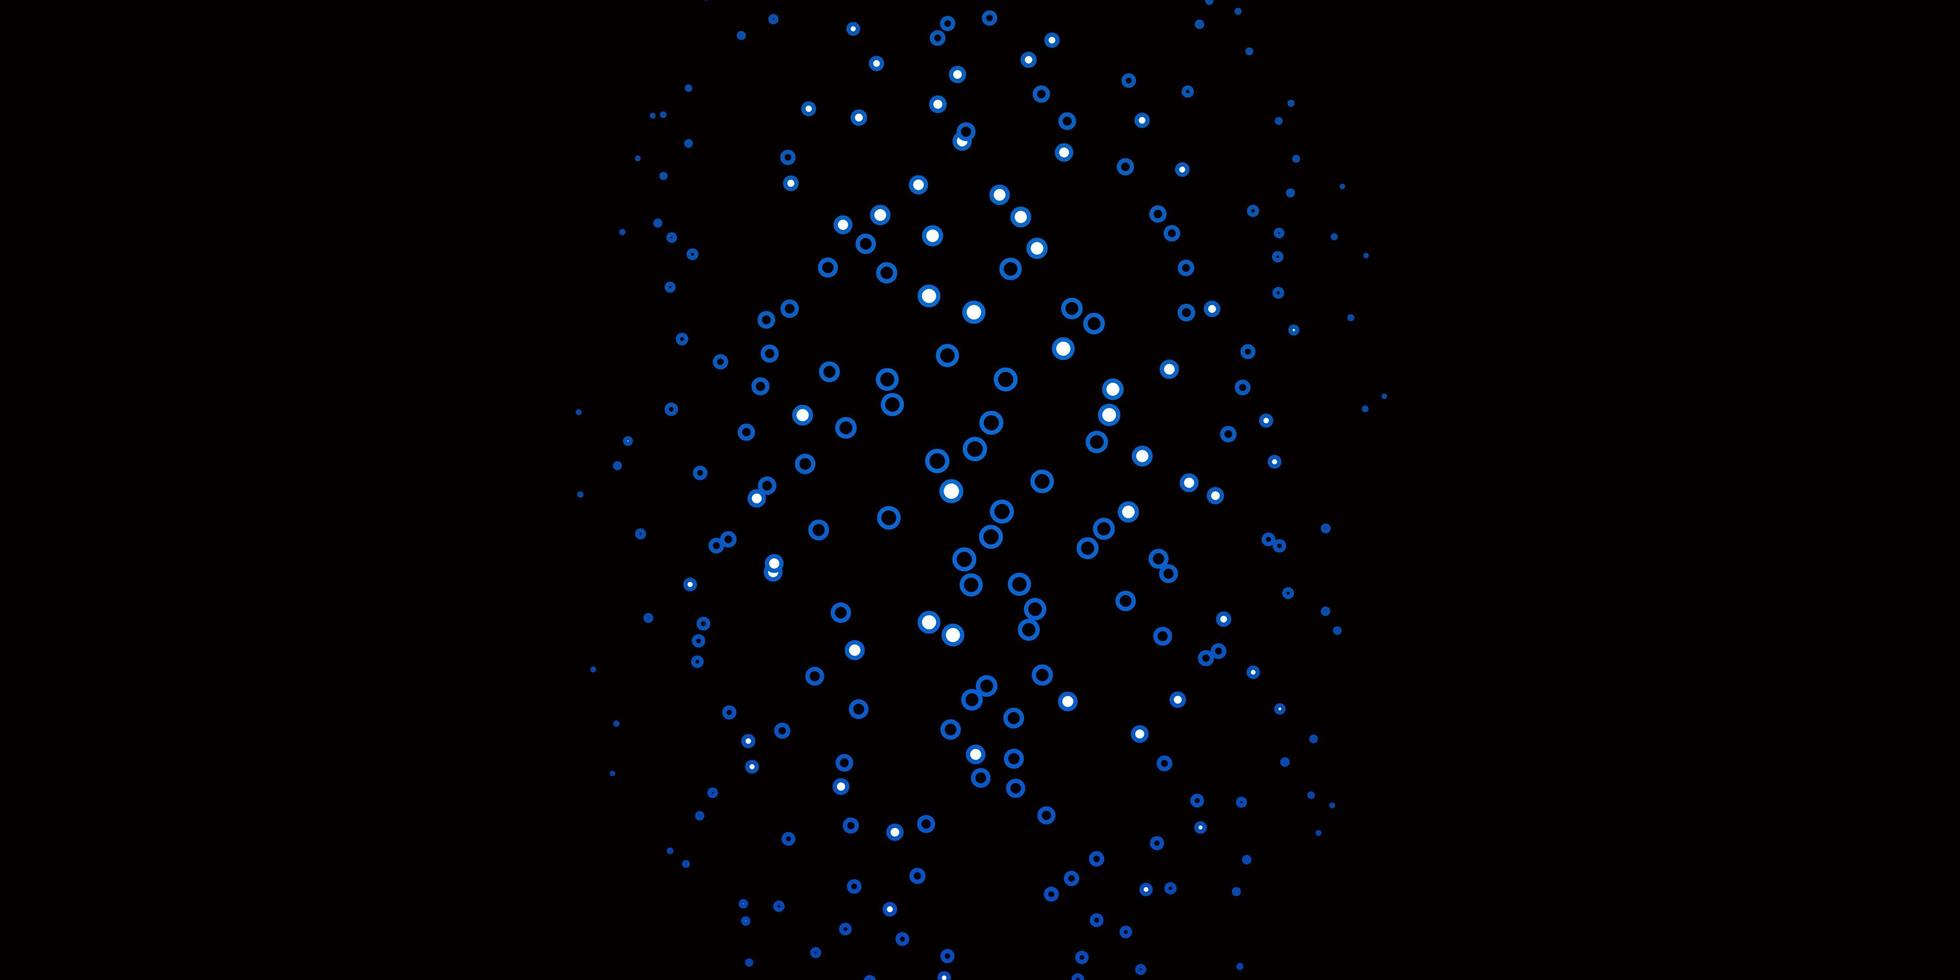 padrão de vetor azul escuro com círculos.